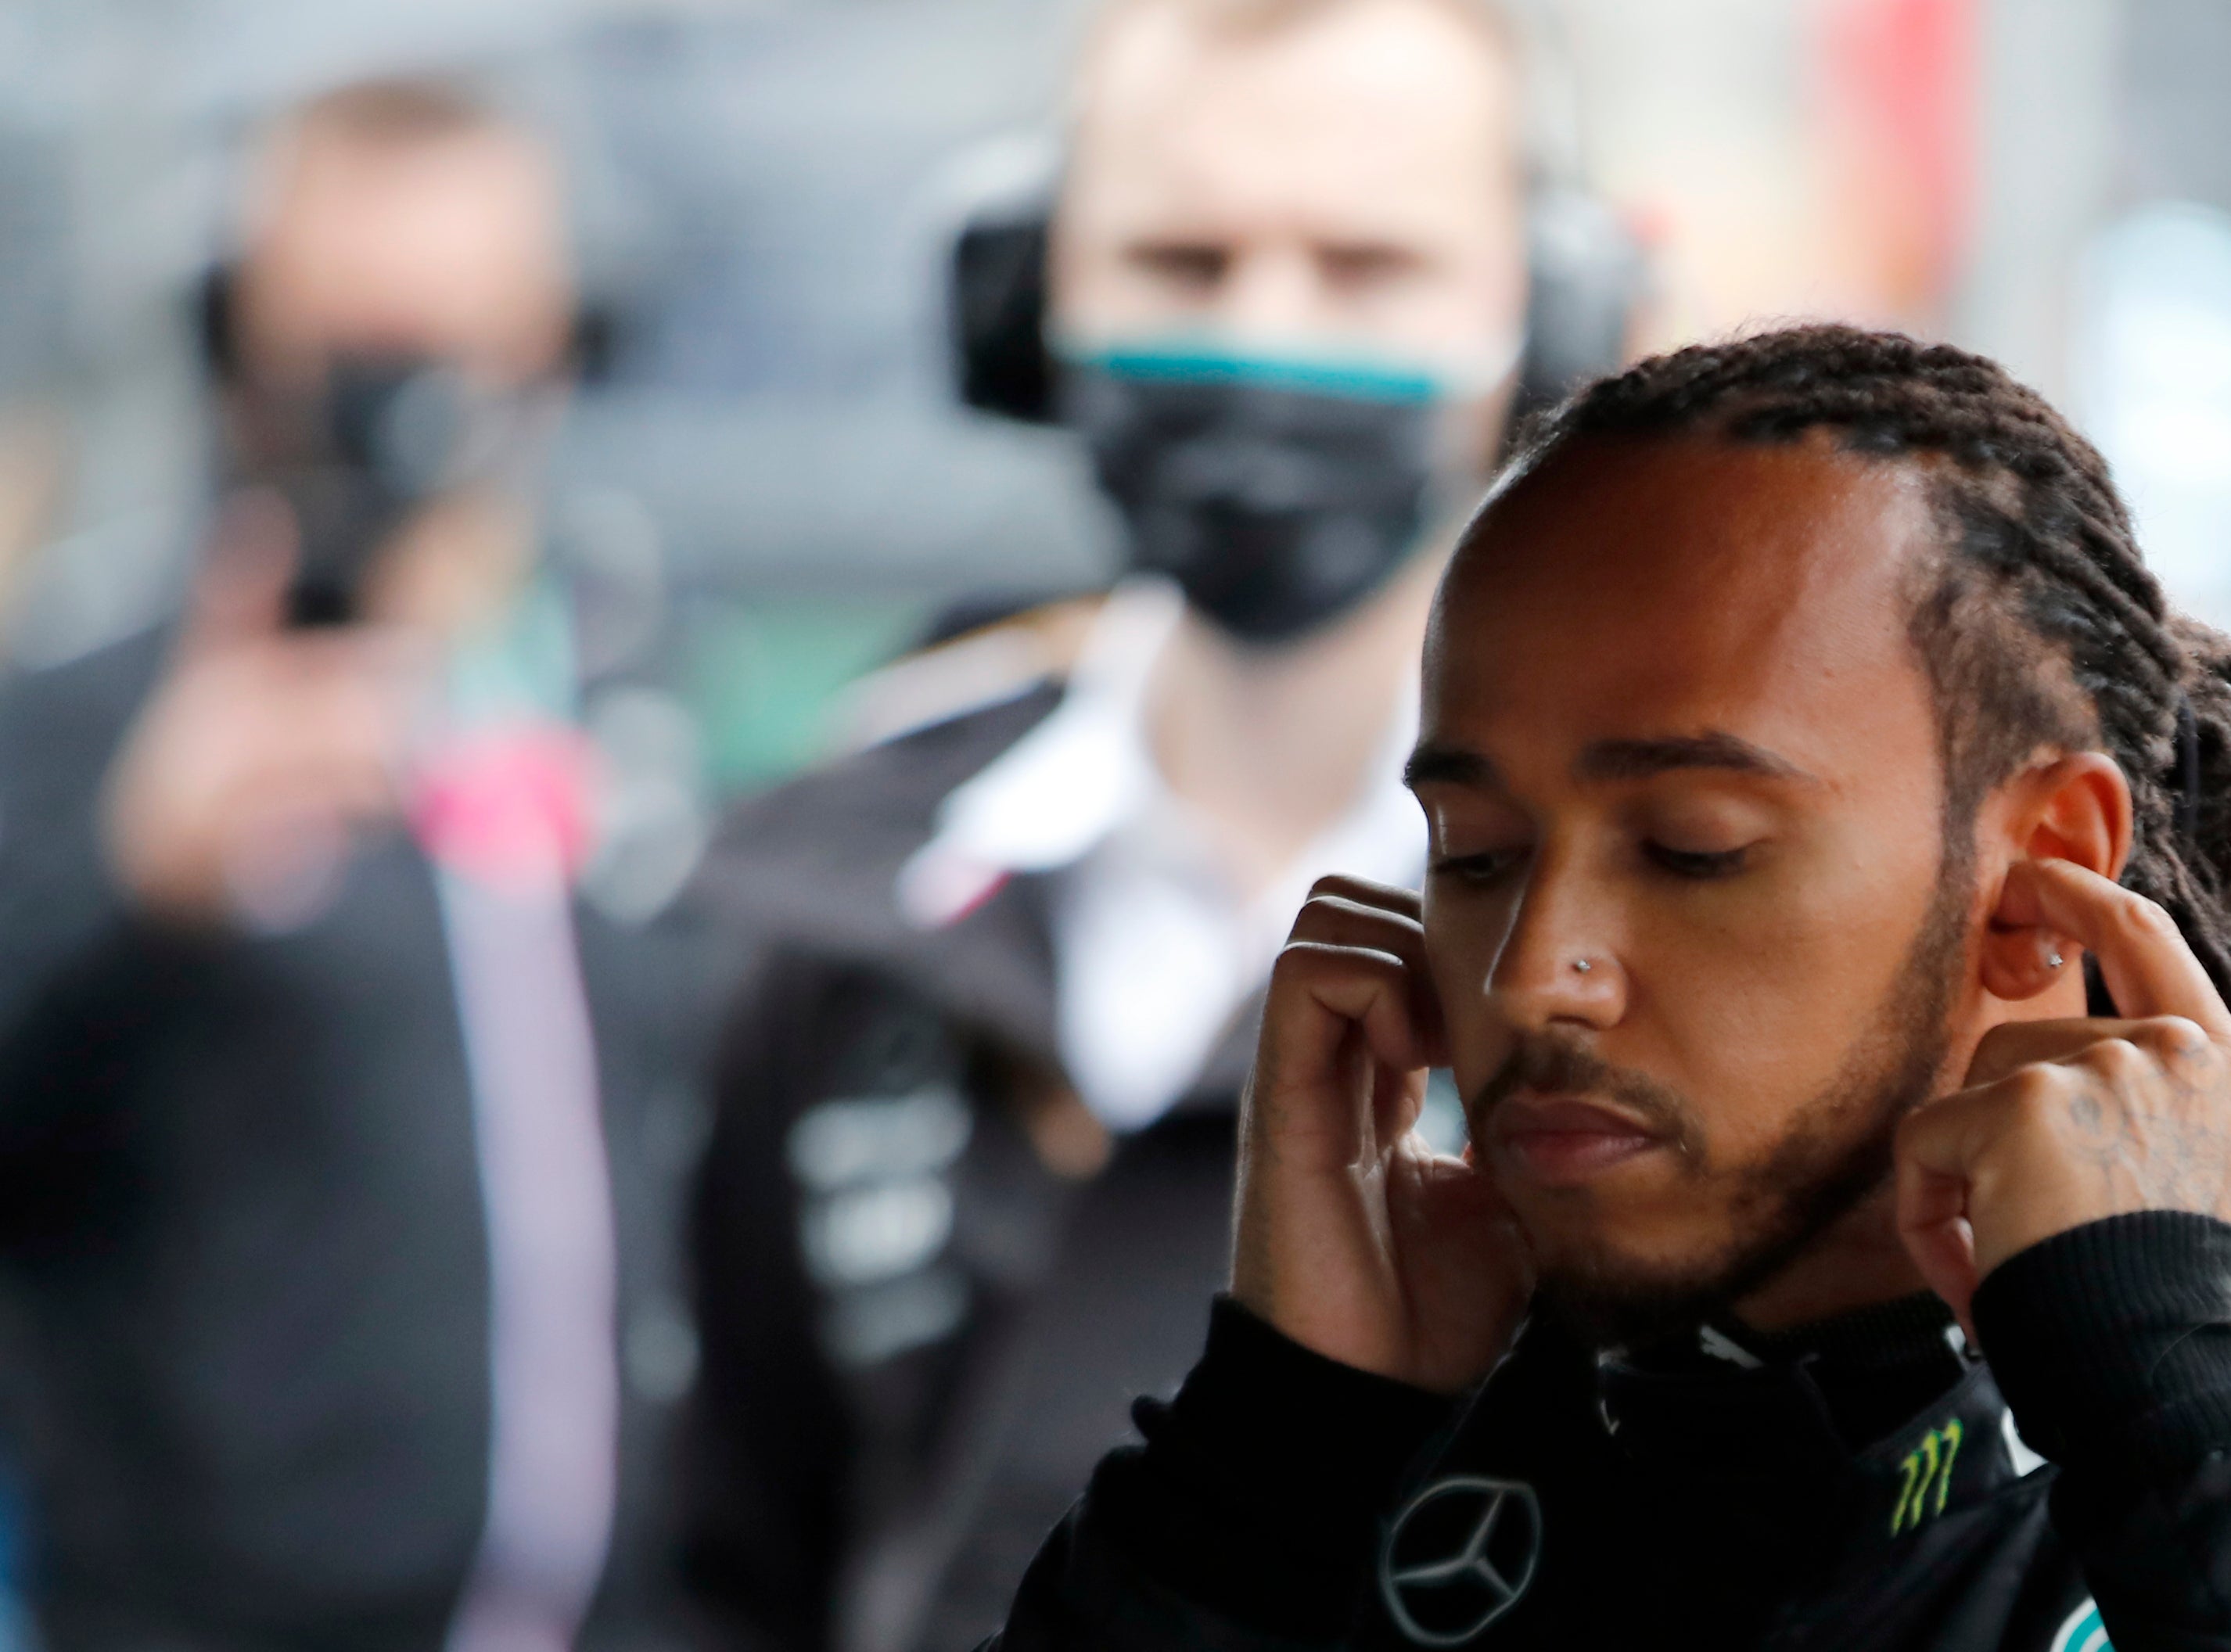 Lewis Hamilton had a frustrating end to his race (Umit Bektas/AP)